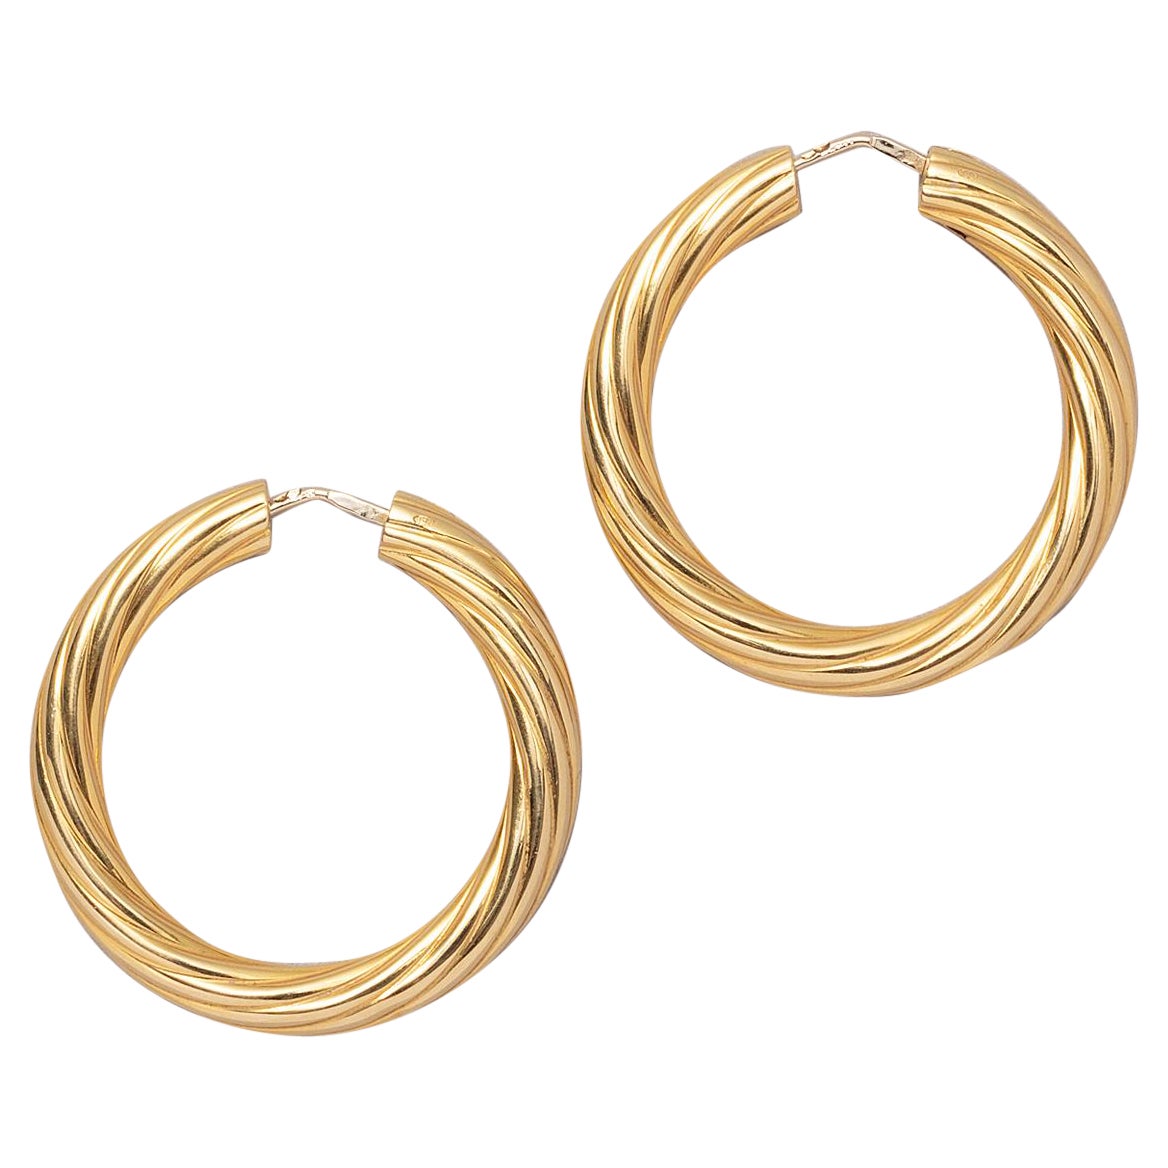 A pair of 18 Carat Gold Fred Paris Hoop Earrings